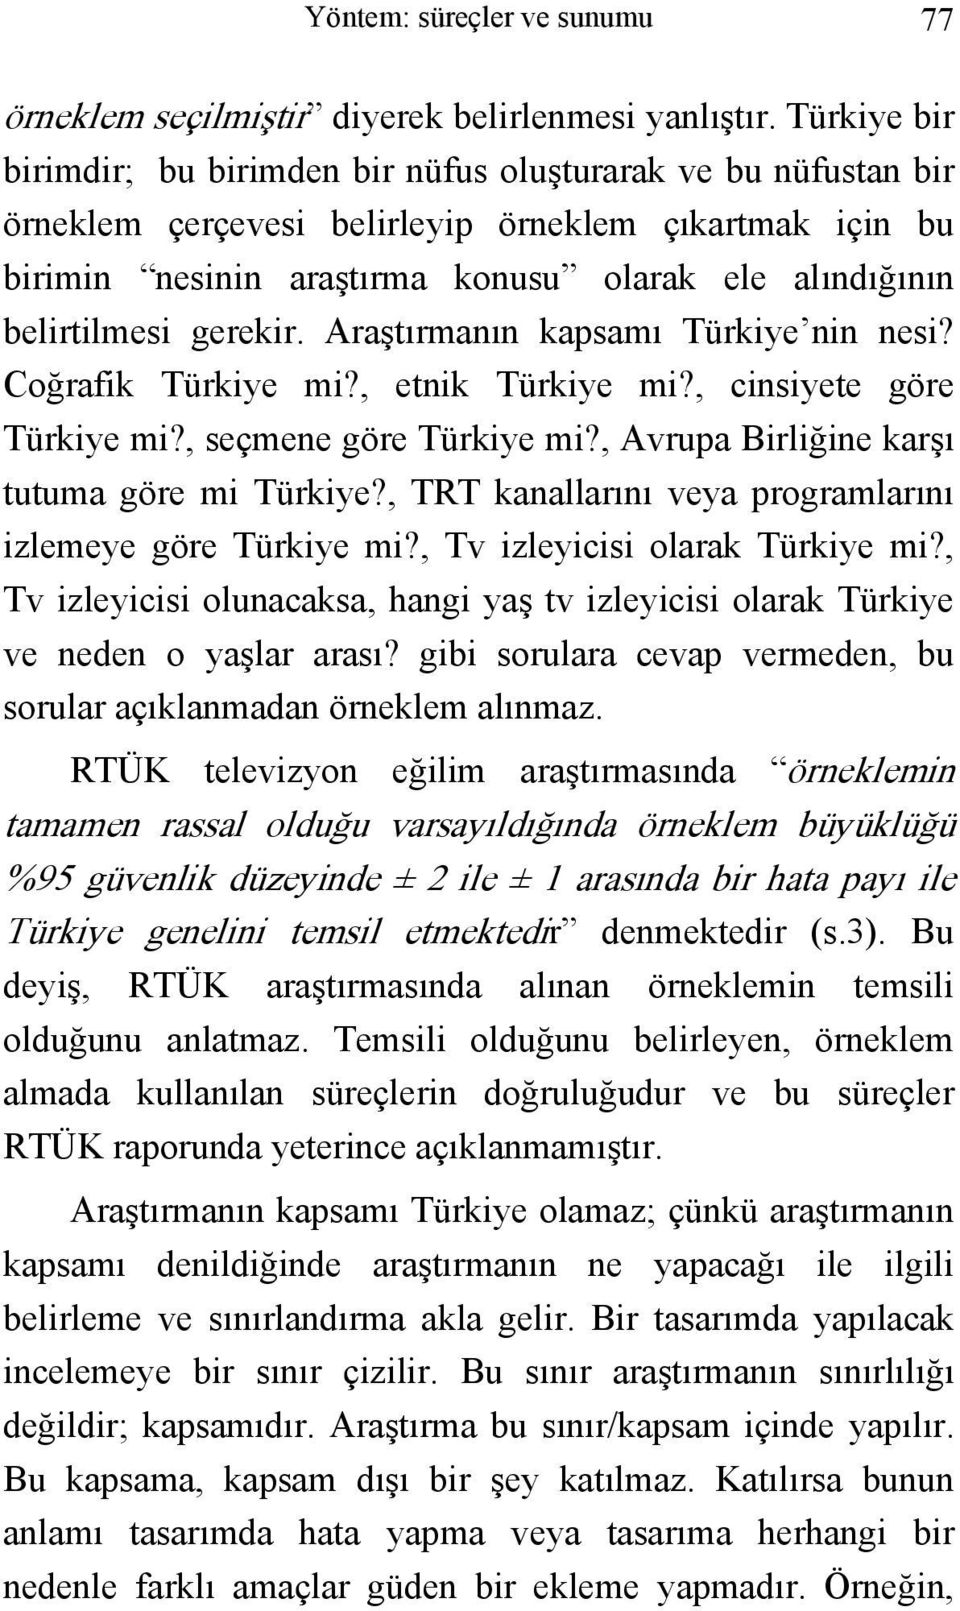 belirtilmesi gerekir. Araştırmanın kapsamı Türkiye nin nesi? Coğrafik Türkiye mi?, etnik Türkiye mi?, cinsiyete göre Türkiye mi?, seçmene göre Türkiye mi?